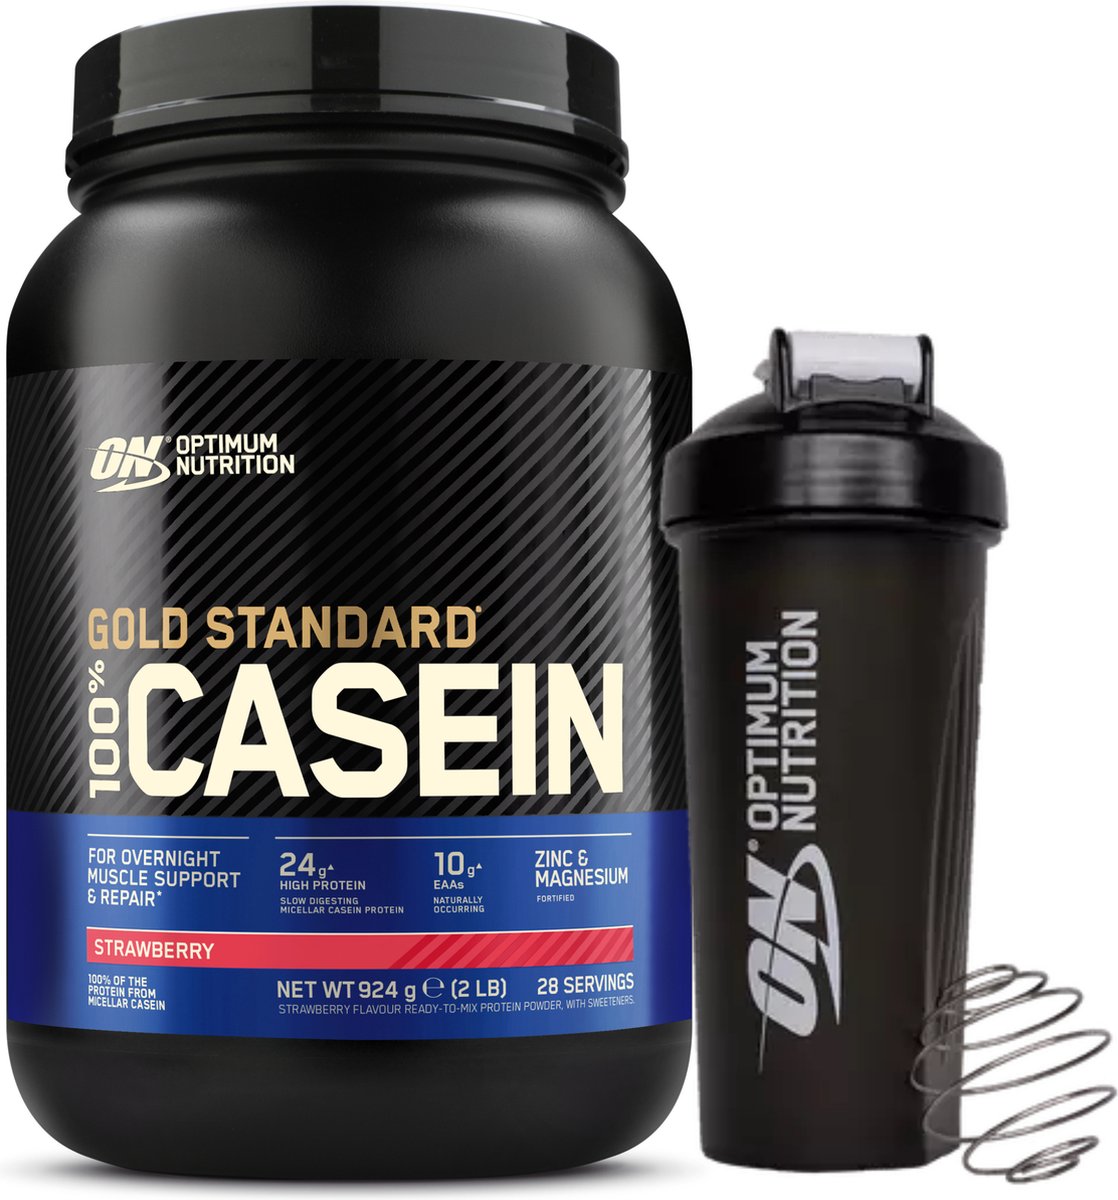 Optimum Nutrition 100% Casein Time Release Protein Bundel - Aardbei Caseine Proteine Poeder + ON Shakebeker - 28 servings (924 gram)